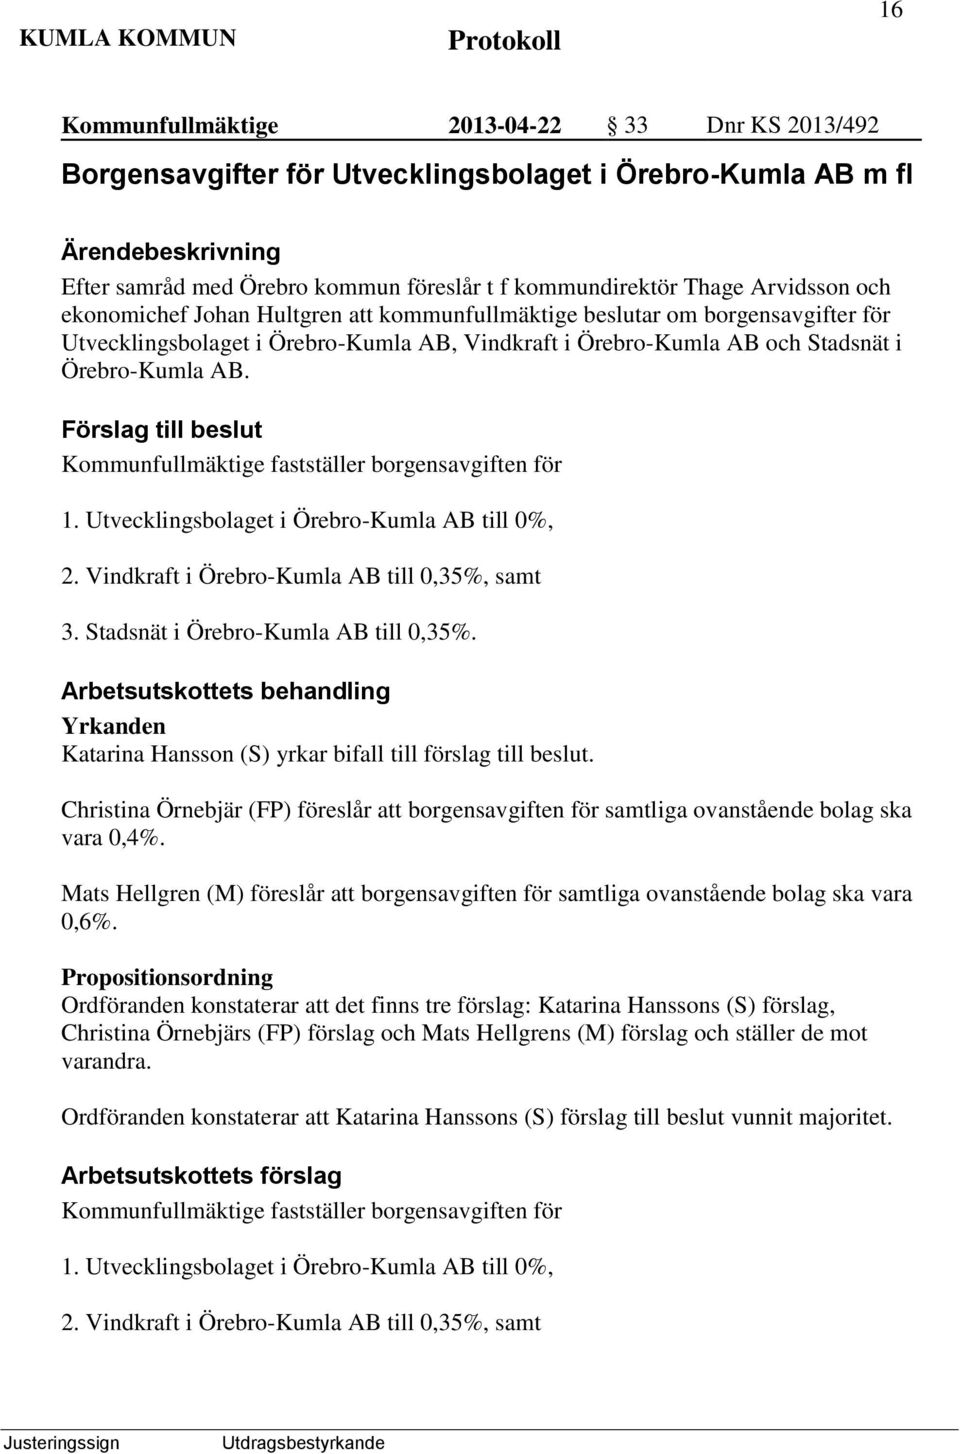 Förslag till beslut Kommunfullmäktige fastställer borgensavgiften för 1. Utvecklingsbolaget i Örebro-Kumla AB till 0%, 2. Vindkraft i Örebro-Kumla AB till 0,35%, samt 3.